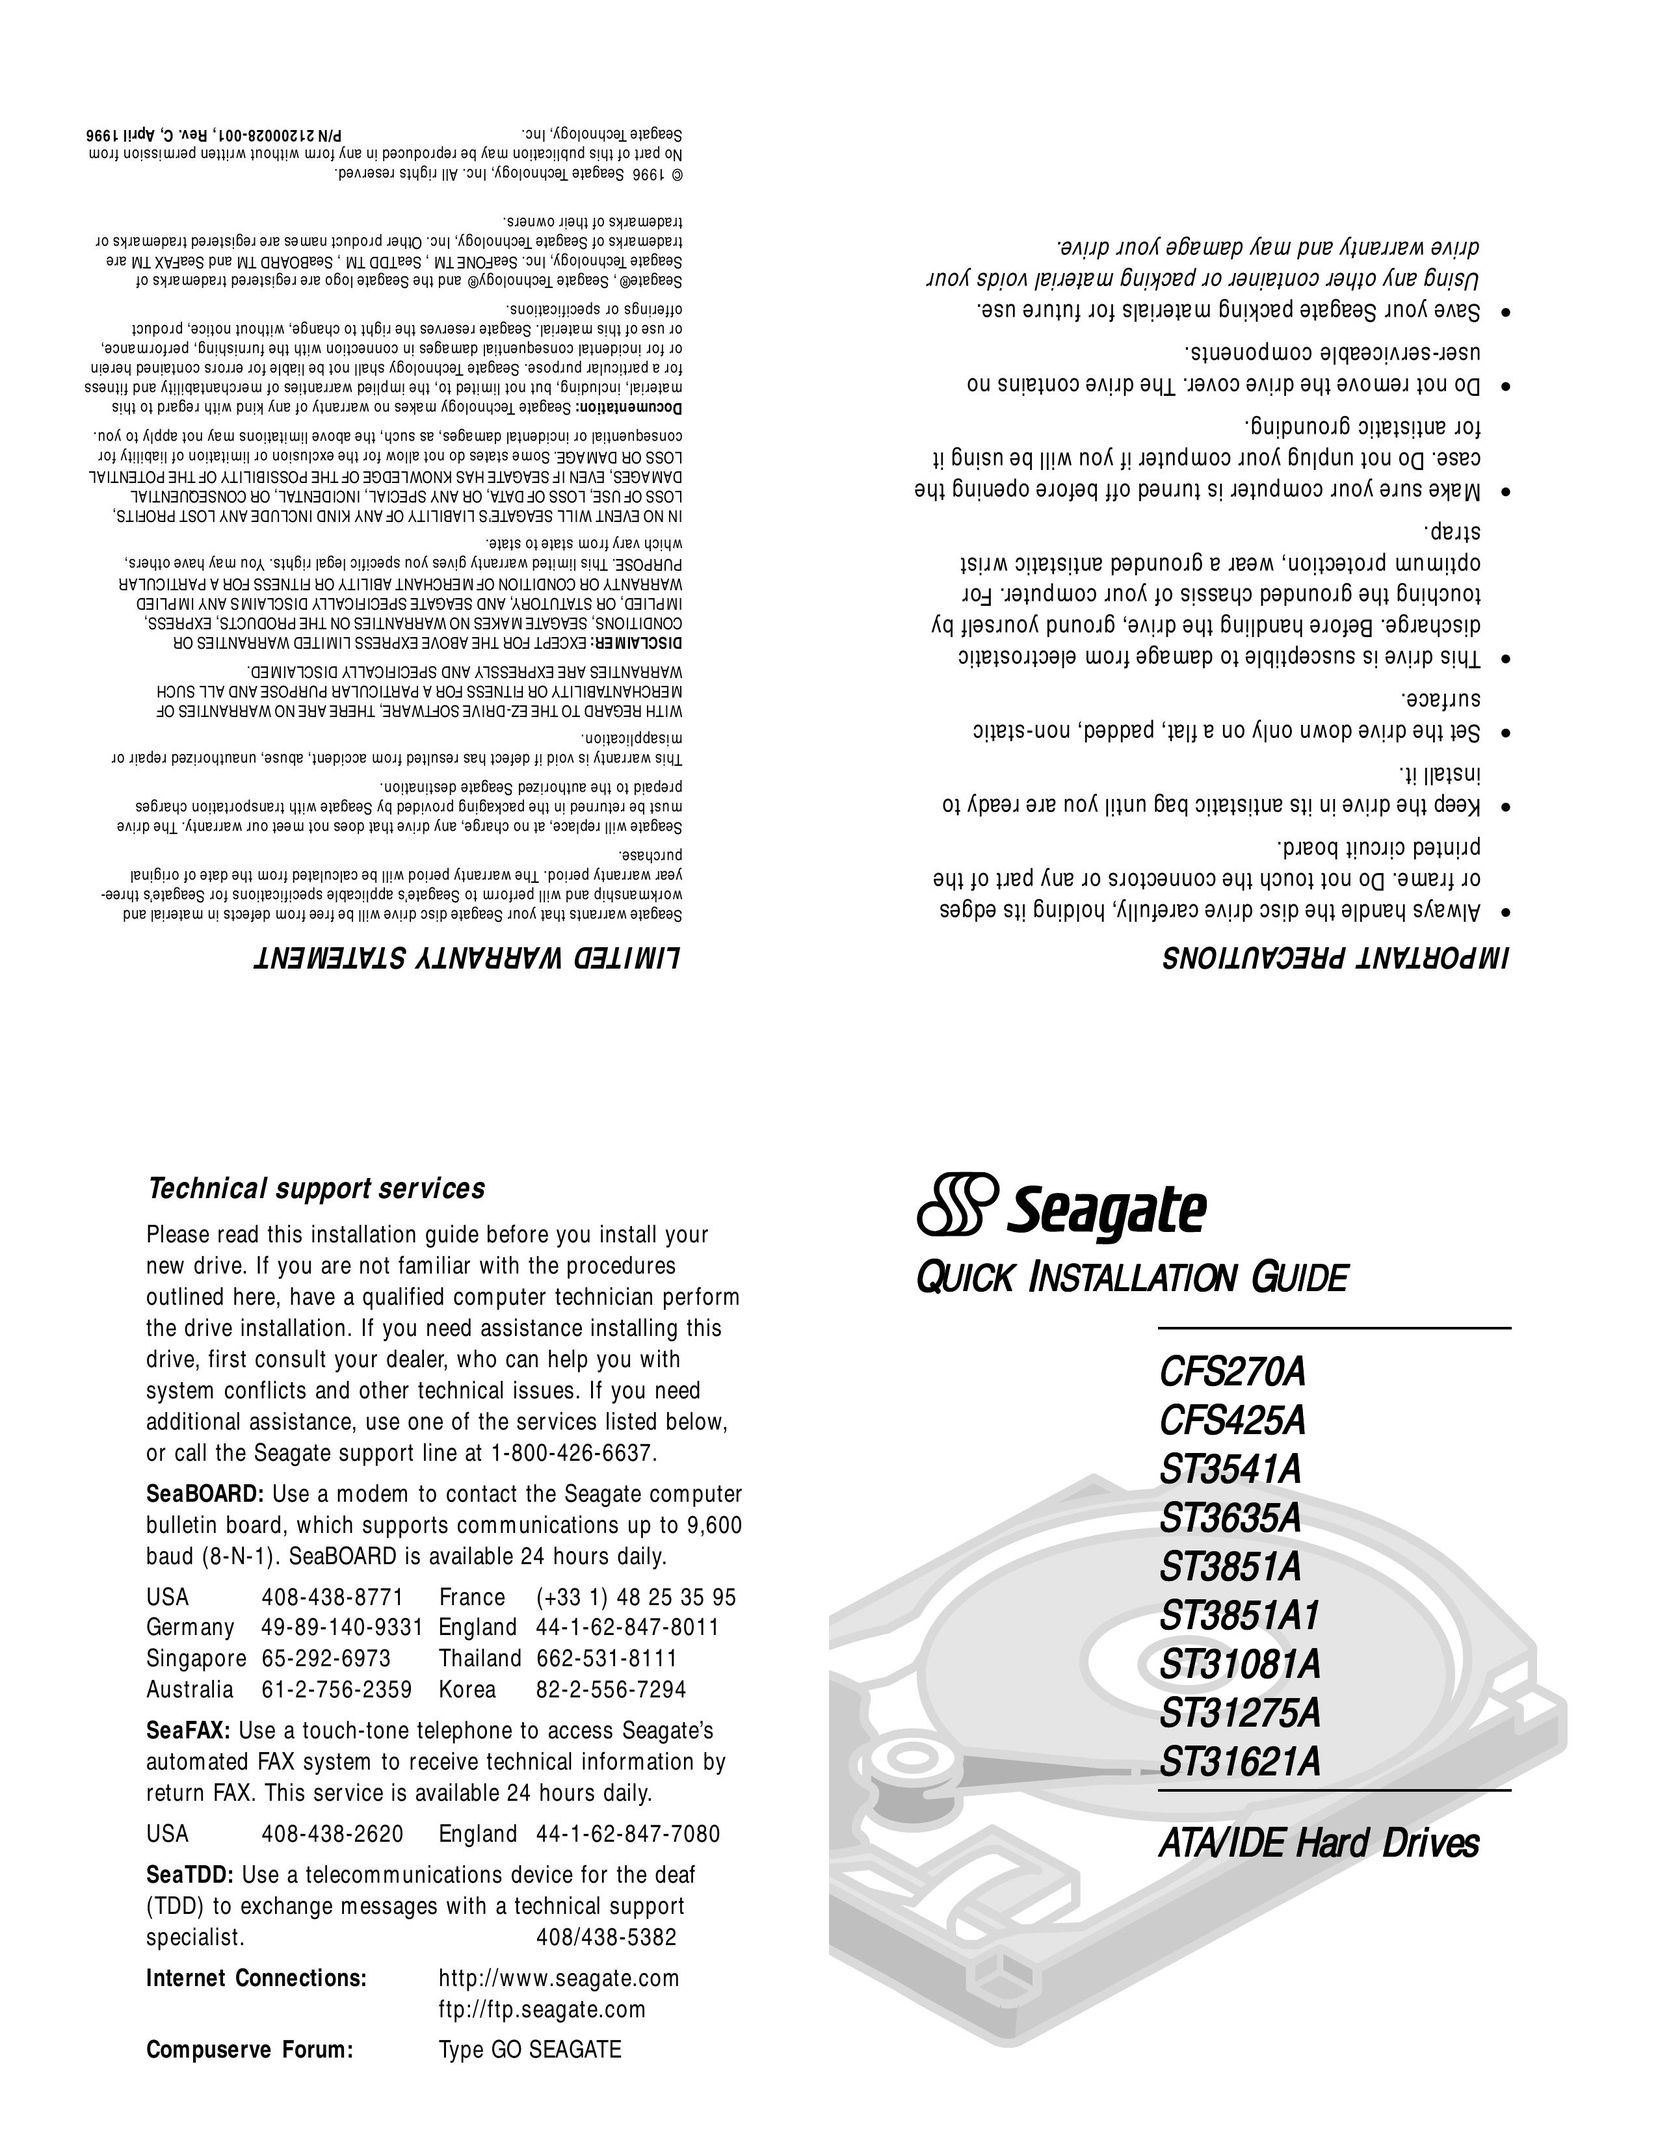 Seagate CFS270A Computer Drive User Manual